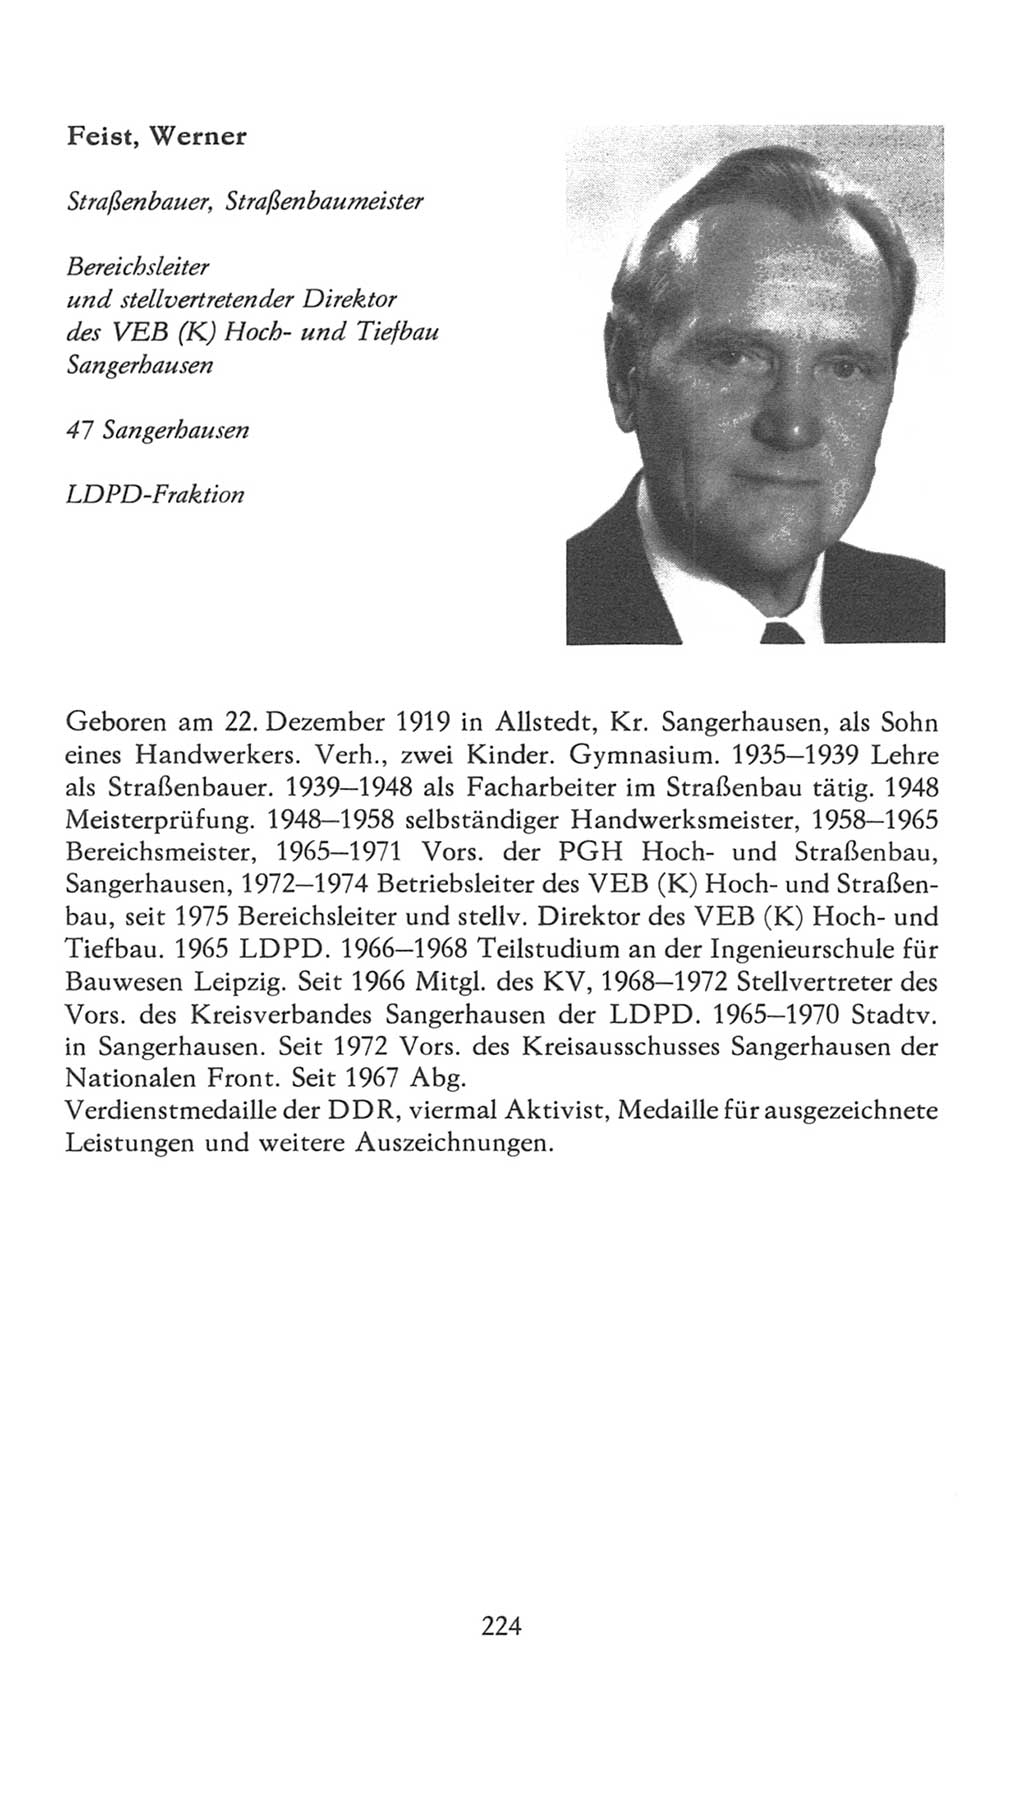 Volkskammer (VK) der Deutschen Demokratischen Republik (DDR), 7. Wahlperiode 1976-1981, Seite 224 (VK. DDR 7. WP. 1976-1981, S. 224)